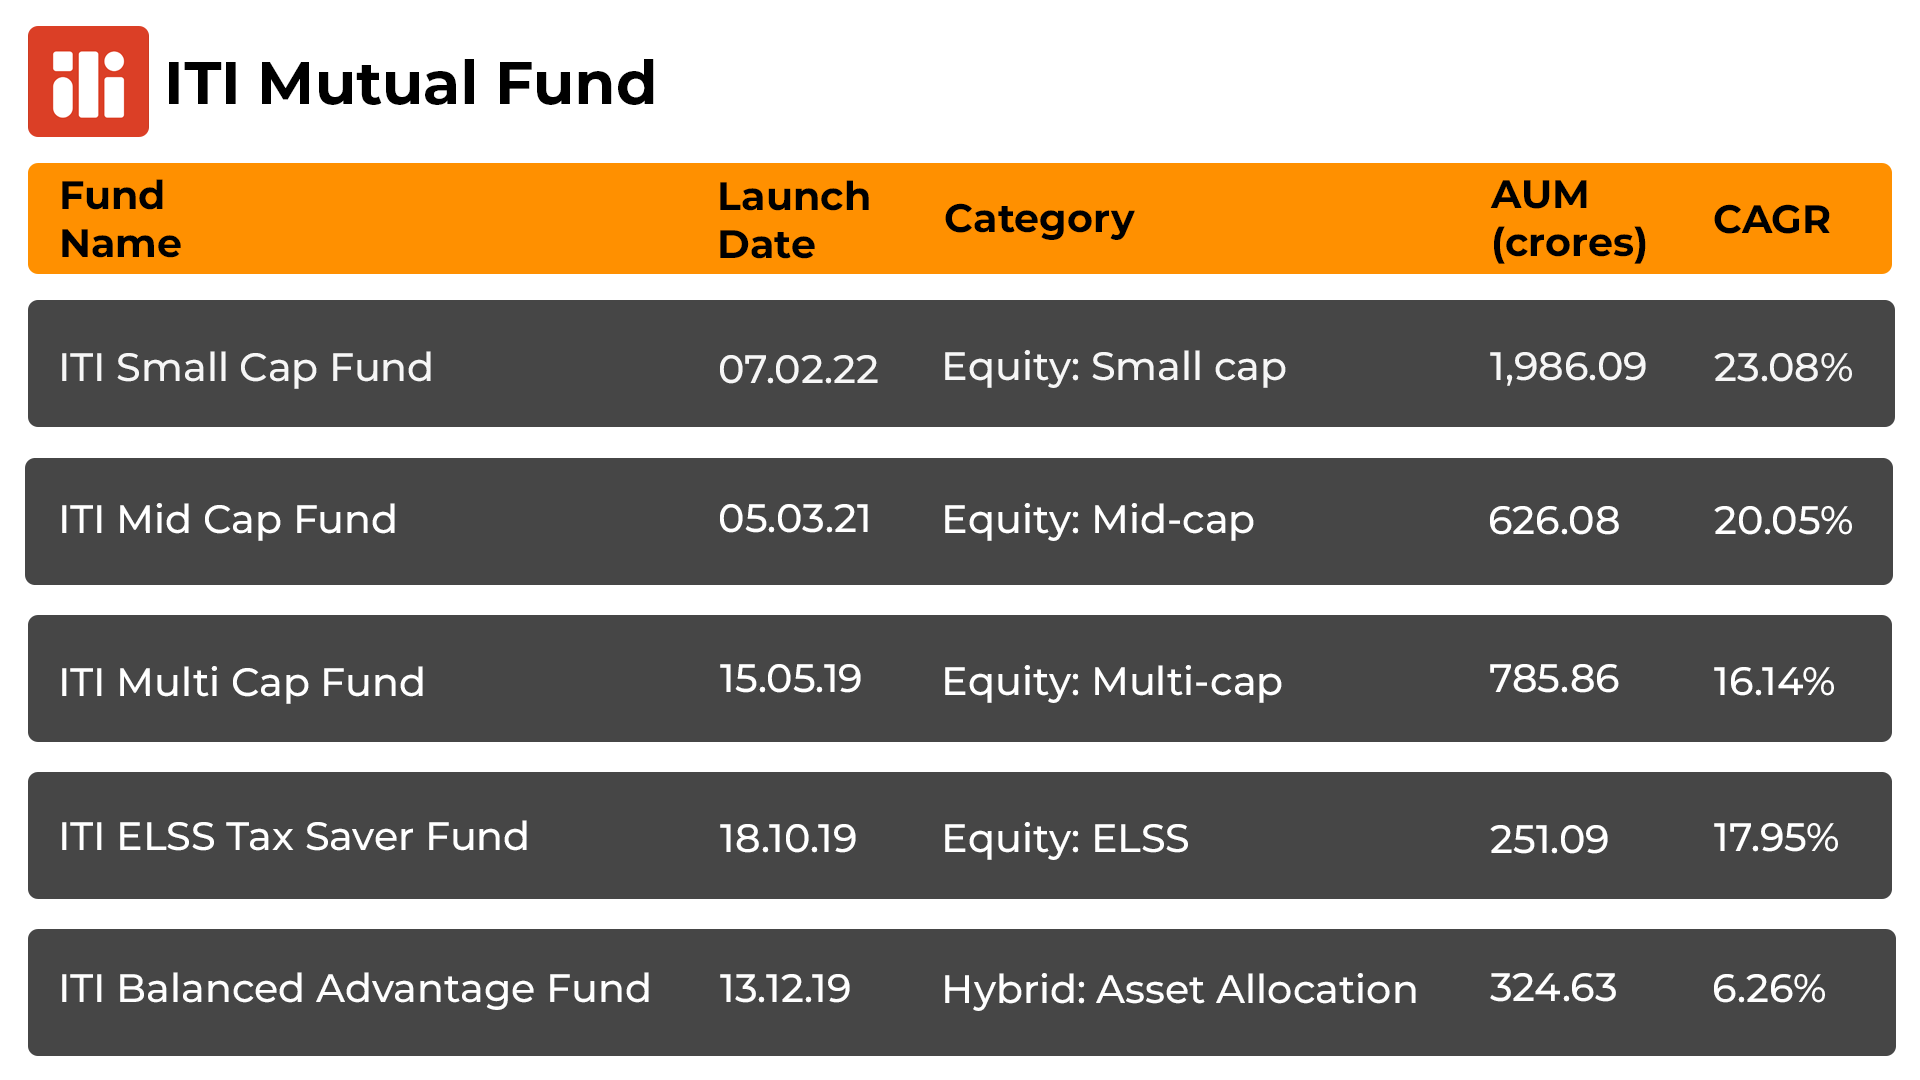 Top 5 ITI Mutual Funds